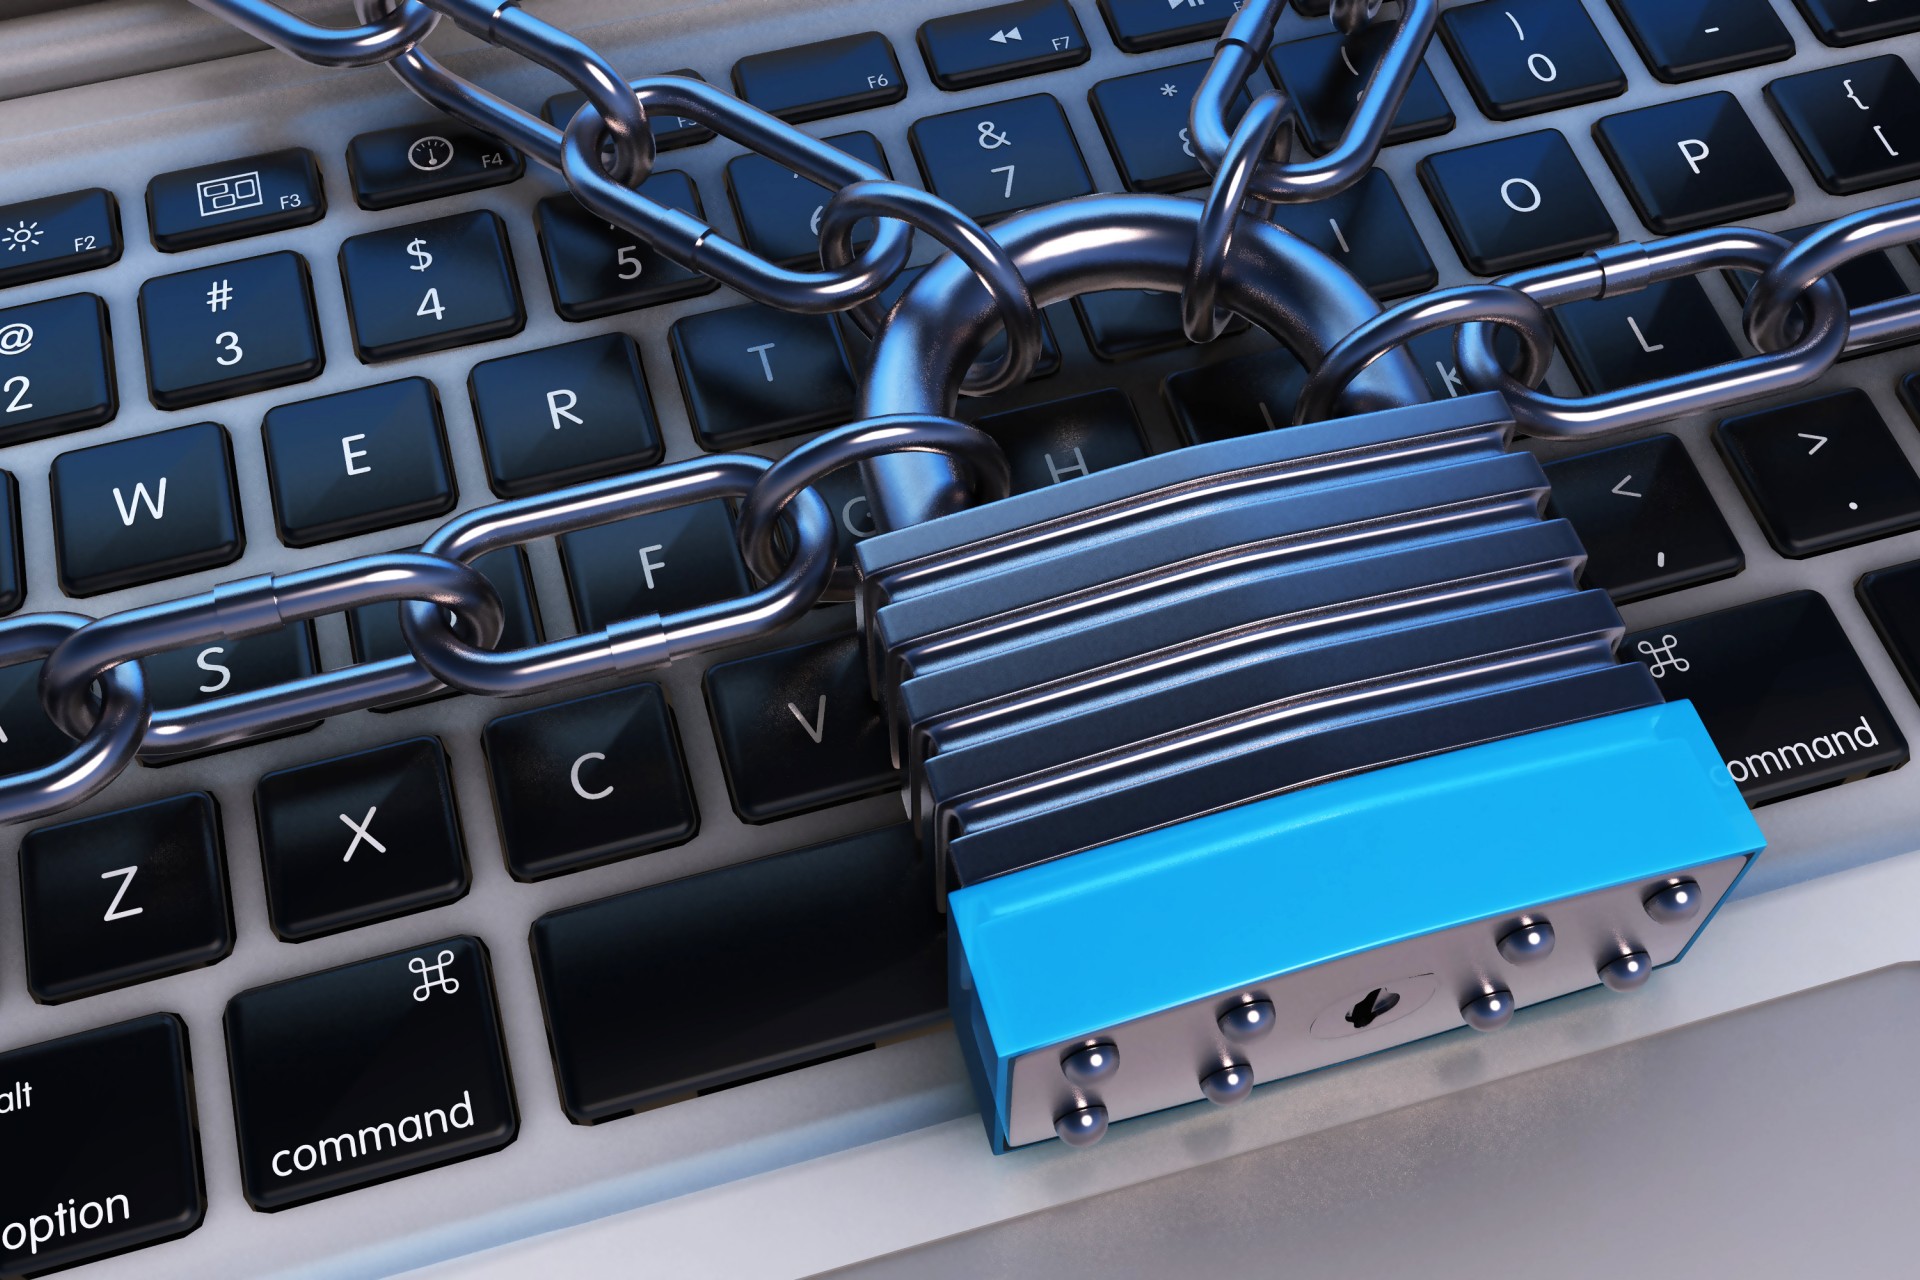 LockBit确认对工商银行美国子公司勒索软件攻击负责